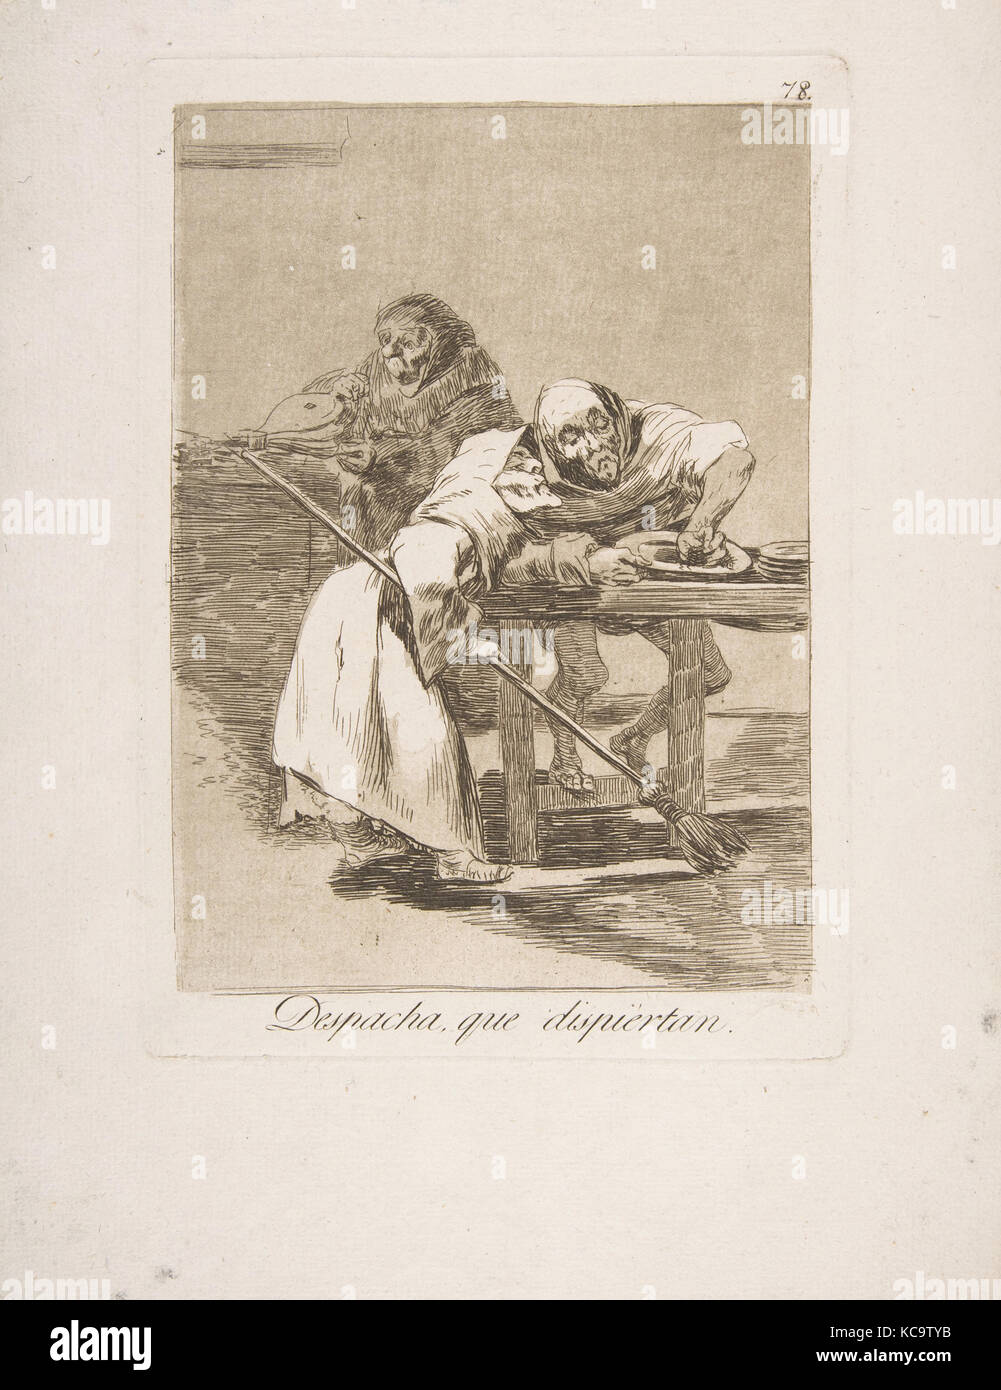 Piastra 78 da 'Los Caprichos': Essere rapido, essi sono il risveglio (Despacha, que dispiertan.), Goya, 1799 Foto Stock